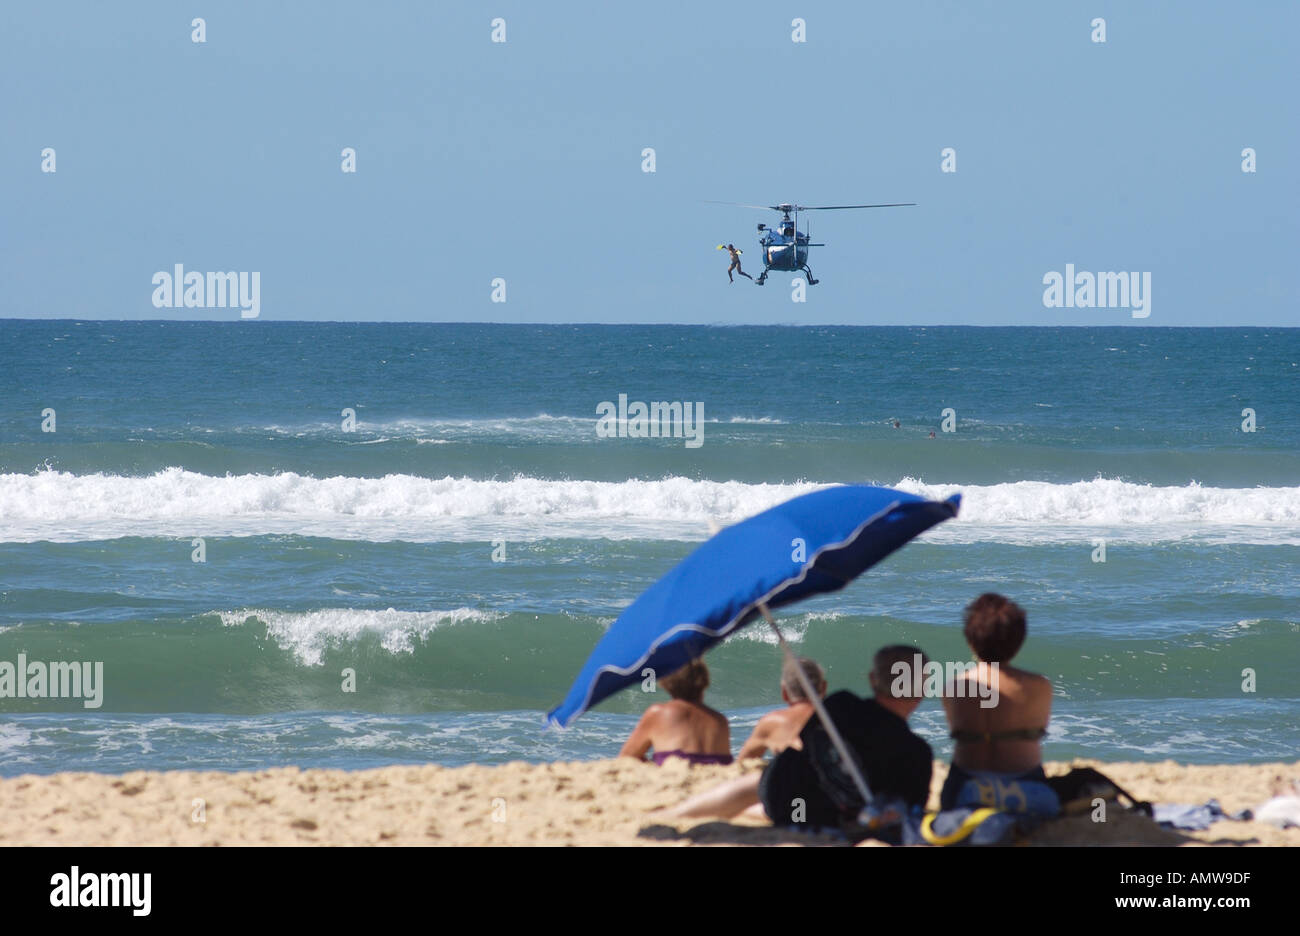 Elicottero francese per il salvataggio aereo in mare che fa cadere un bagnino nel mare. I villeggianti guardano sulla spiaggia da sotto un ombrellone. Messange spiaggia Francia Foto Stock